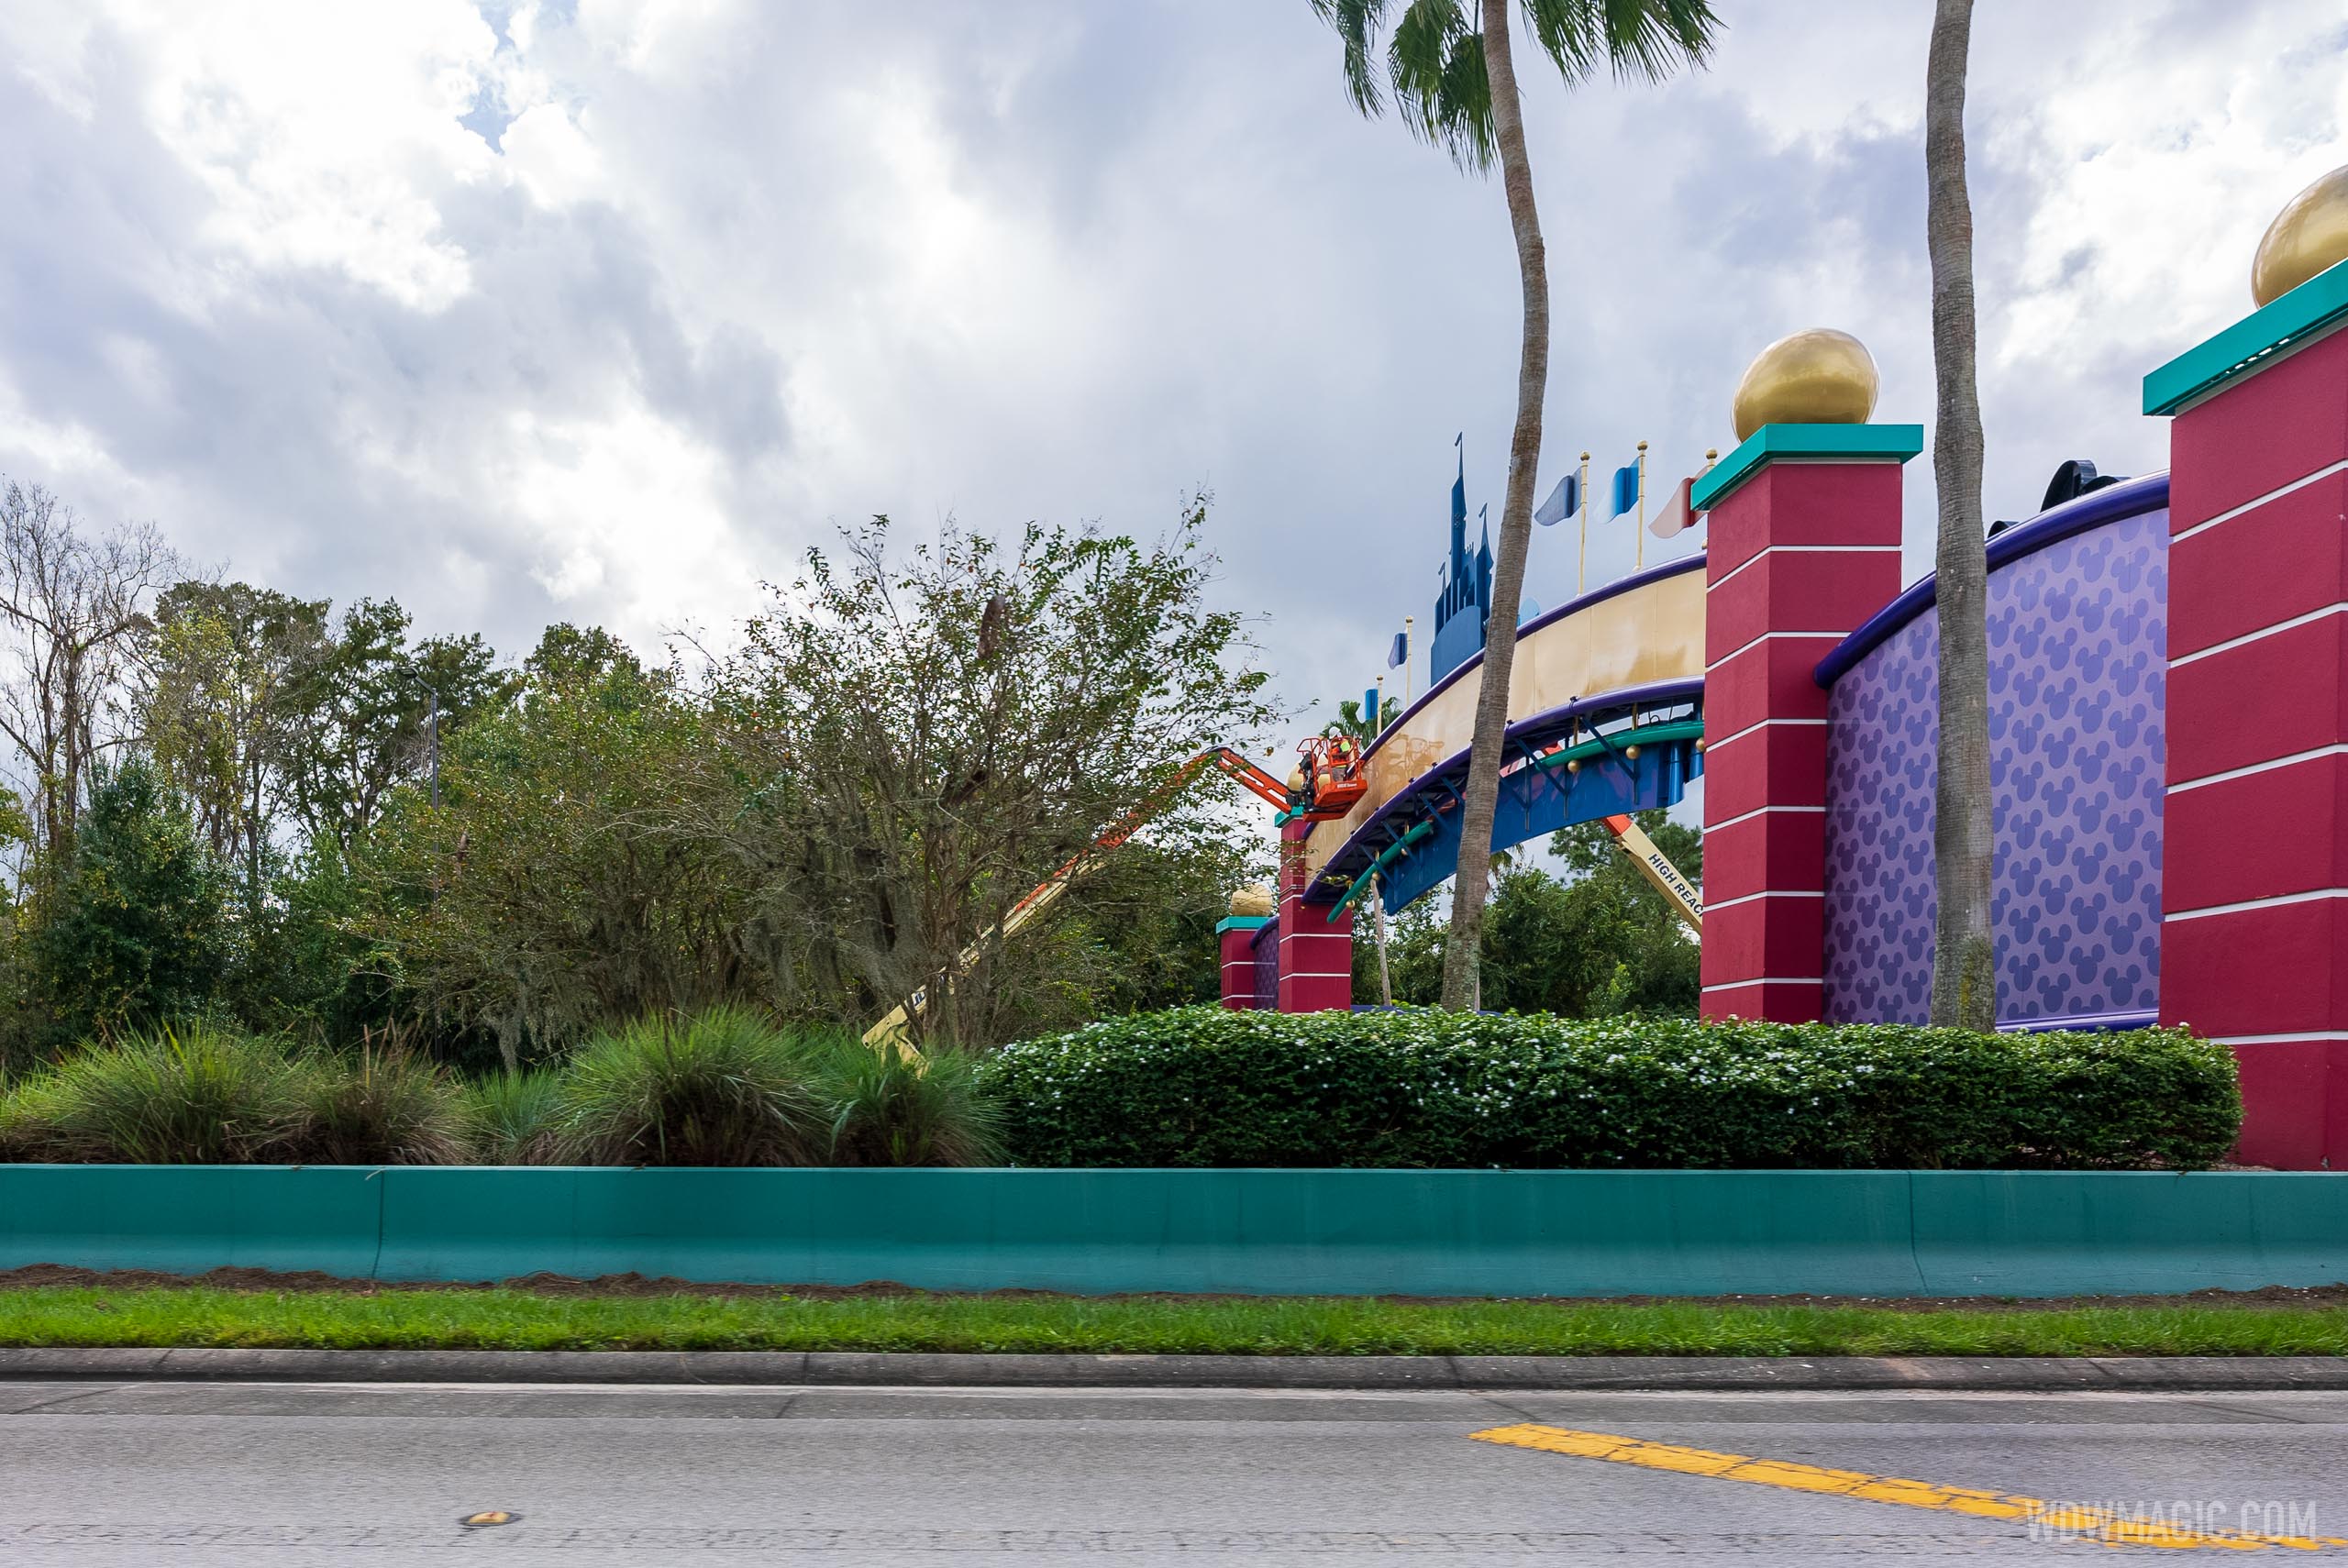 Work gets underway on the new look Walt Disney World gateways